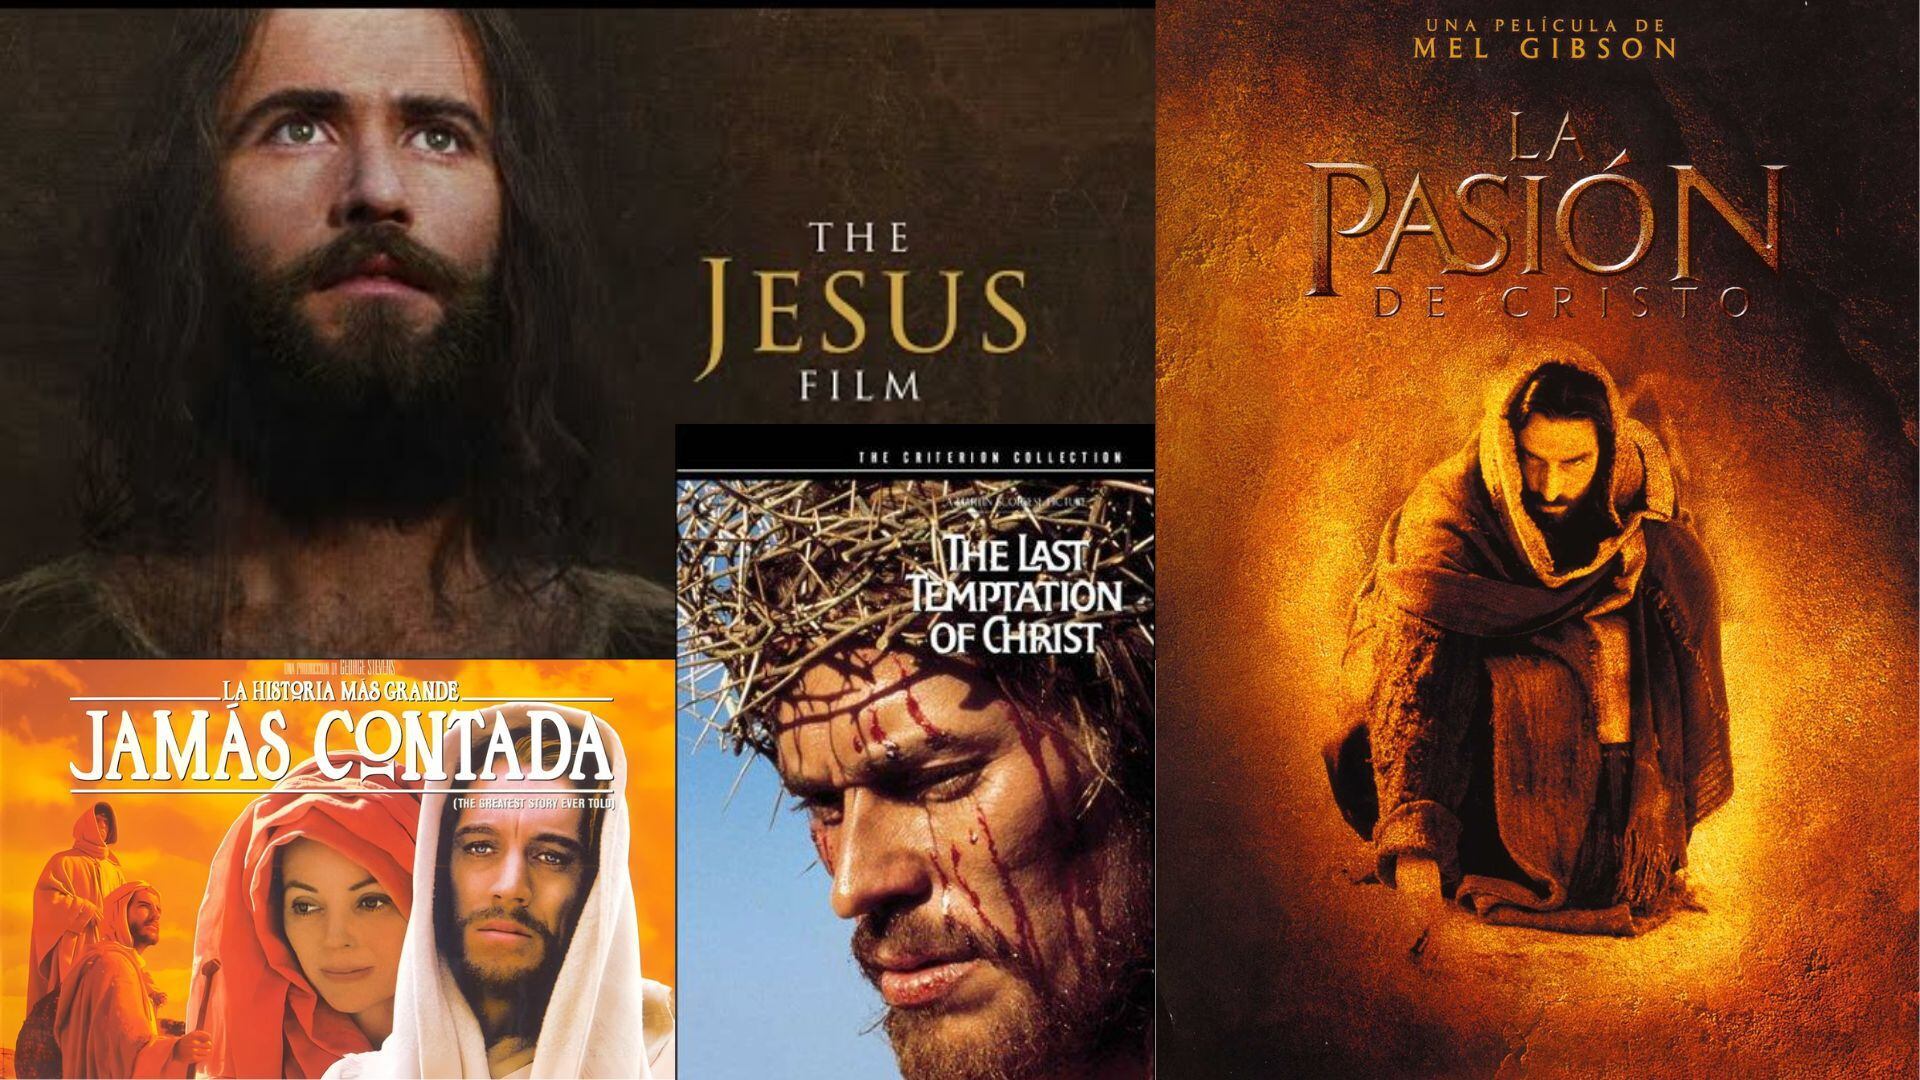 Películas basadas en la vida de Jesús de Nazareth, la figura más importante del cristianismo - crédito Infobae